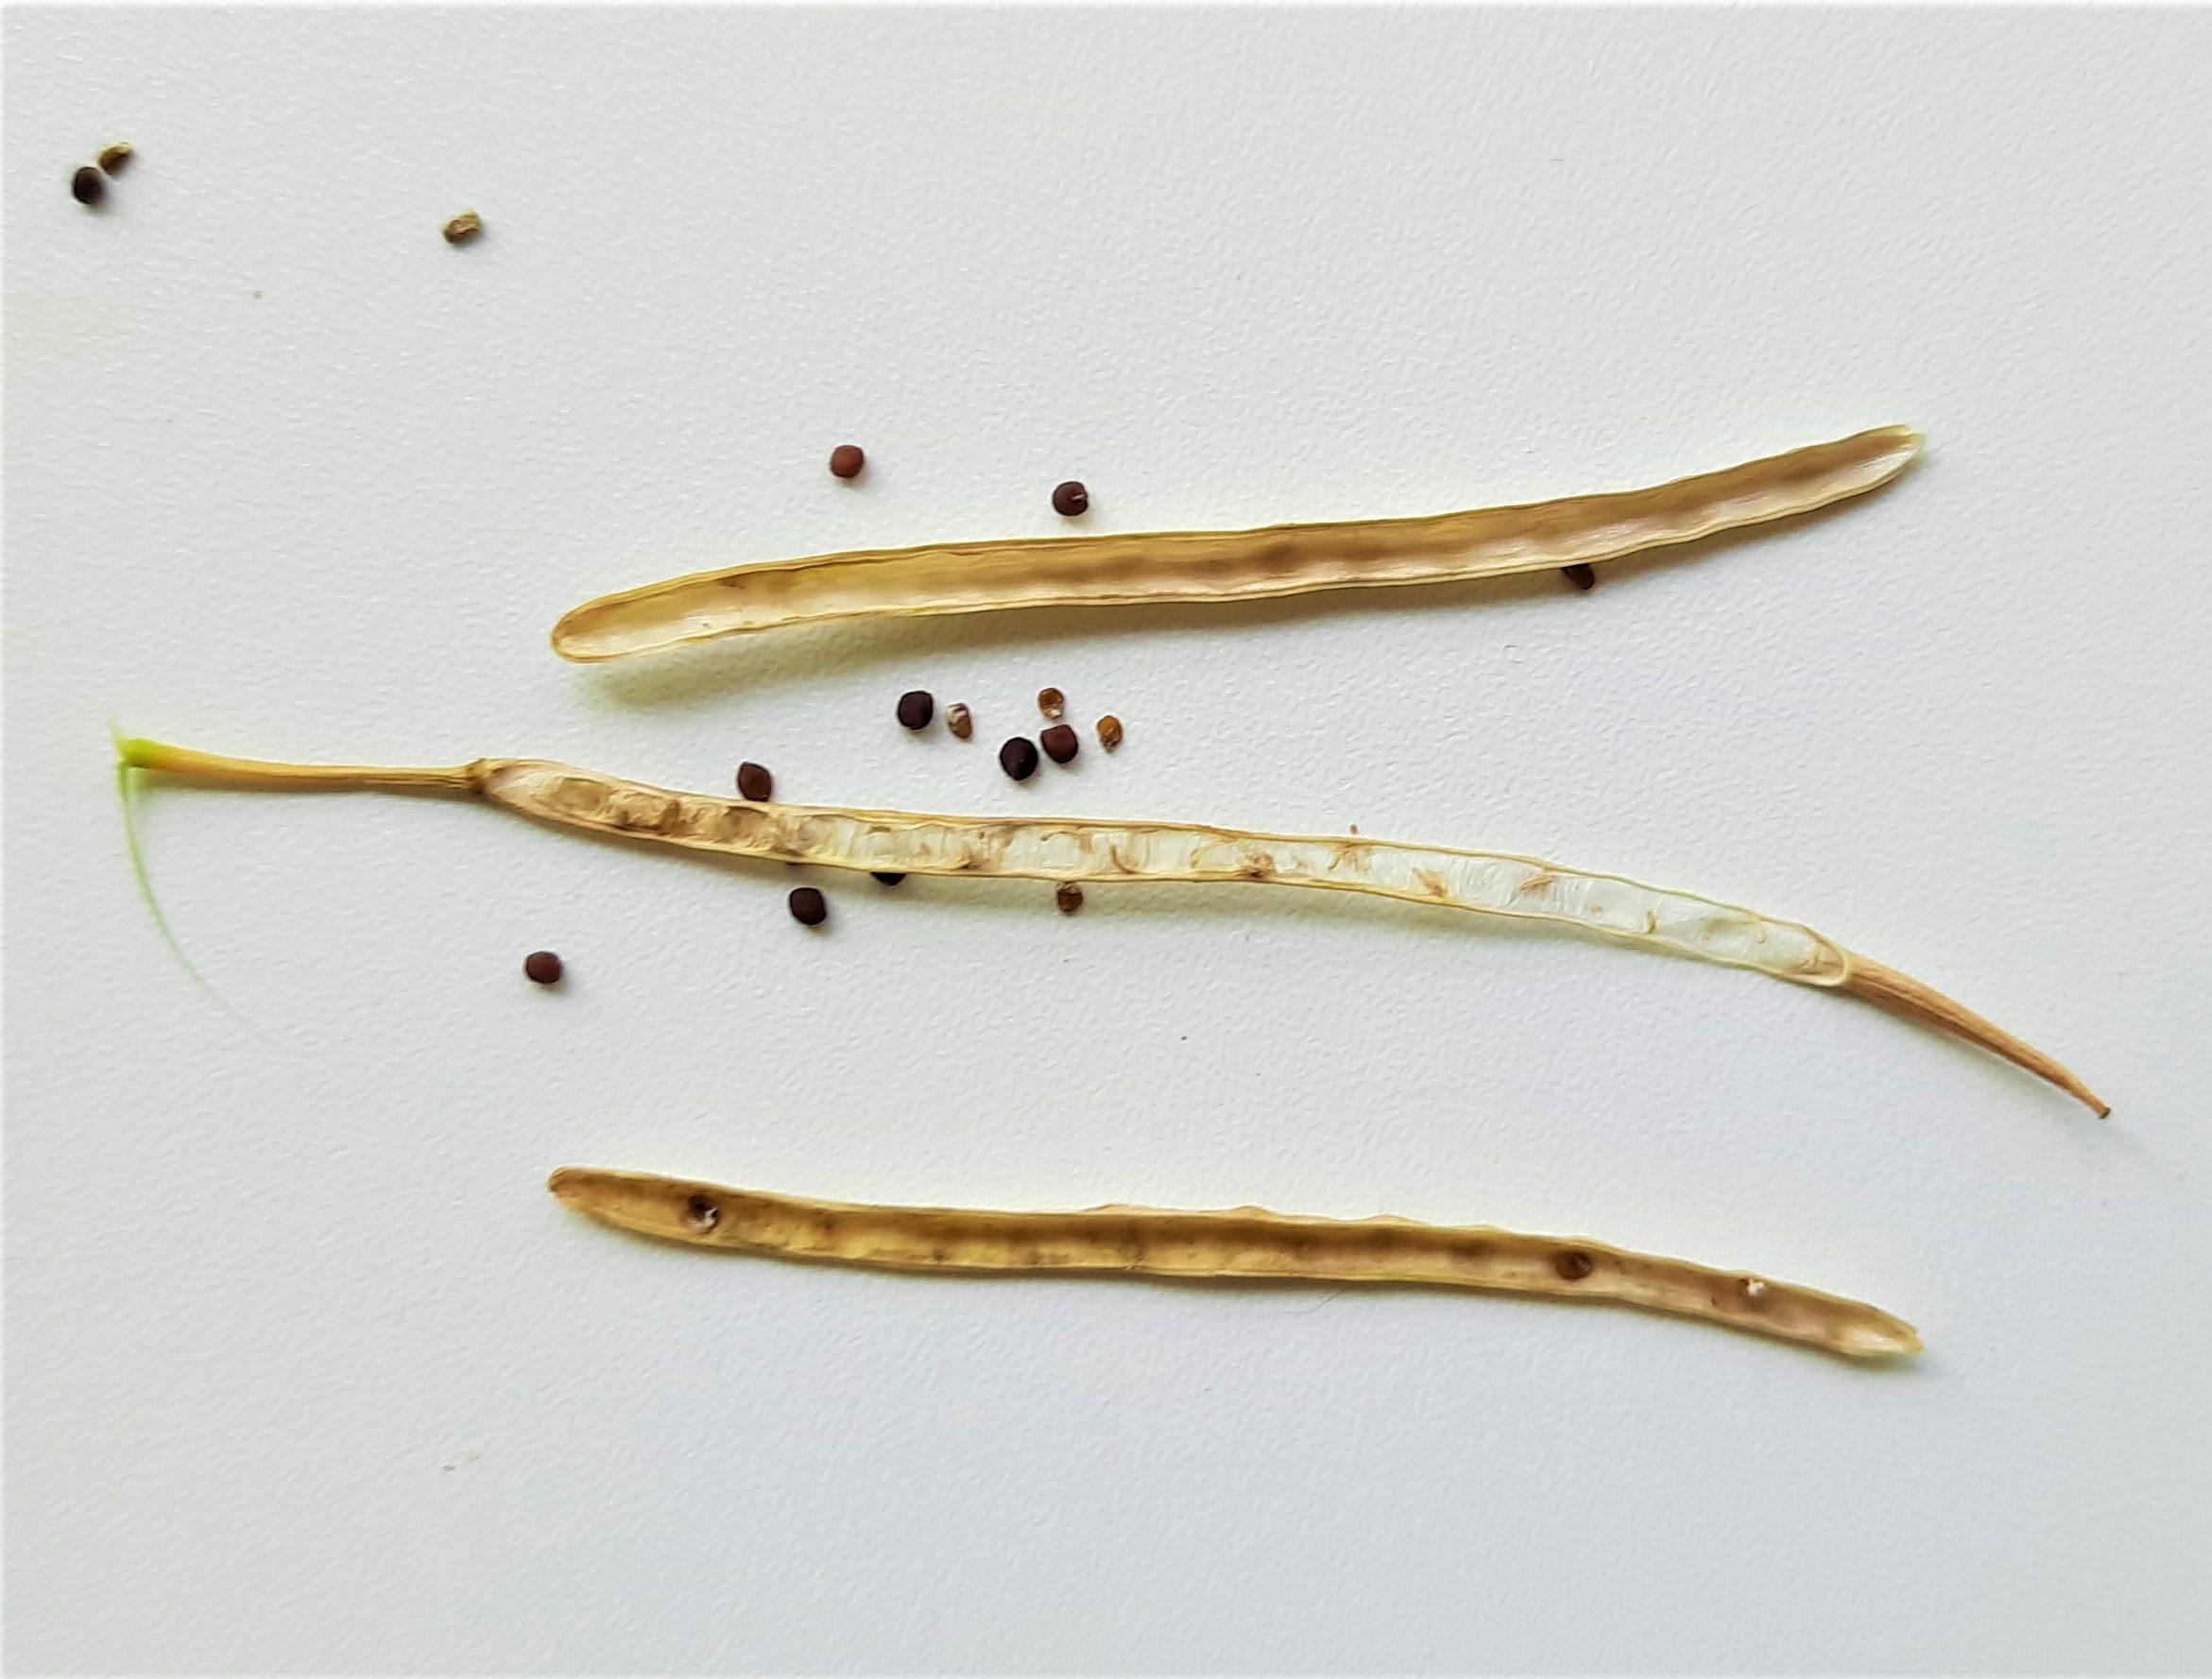 Der Samenstand ist dreigeteilt, Die dünne mittige Trennwand ist fest mit der Pflanze verbunden, während die beiden Außenhüllen schon bei leisestem Druck aufspringen